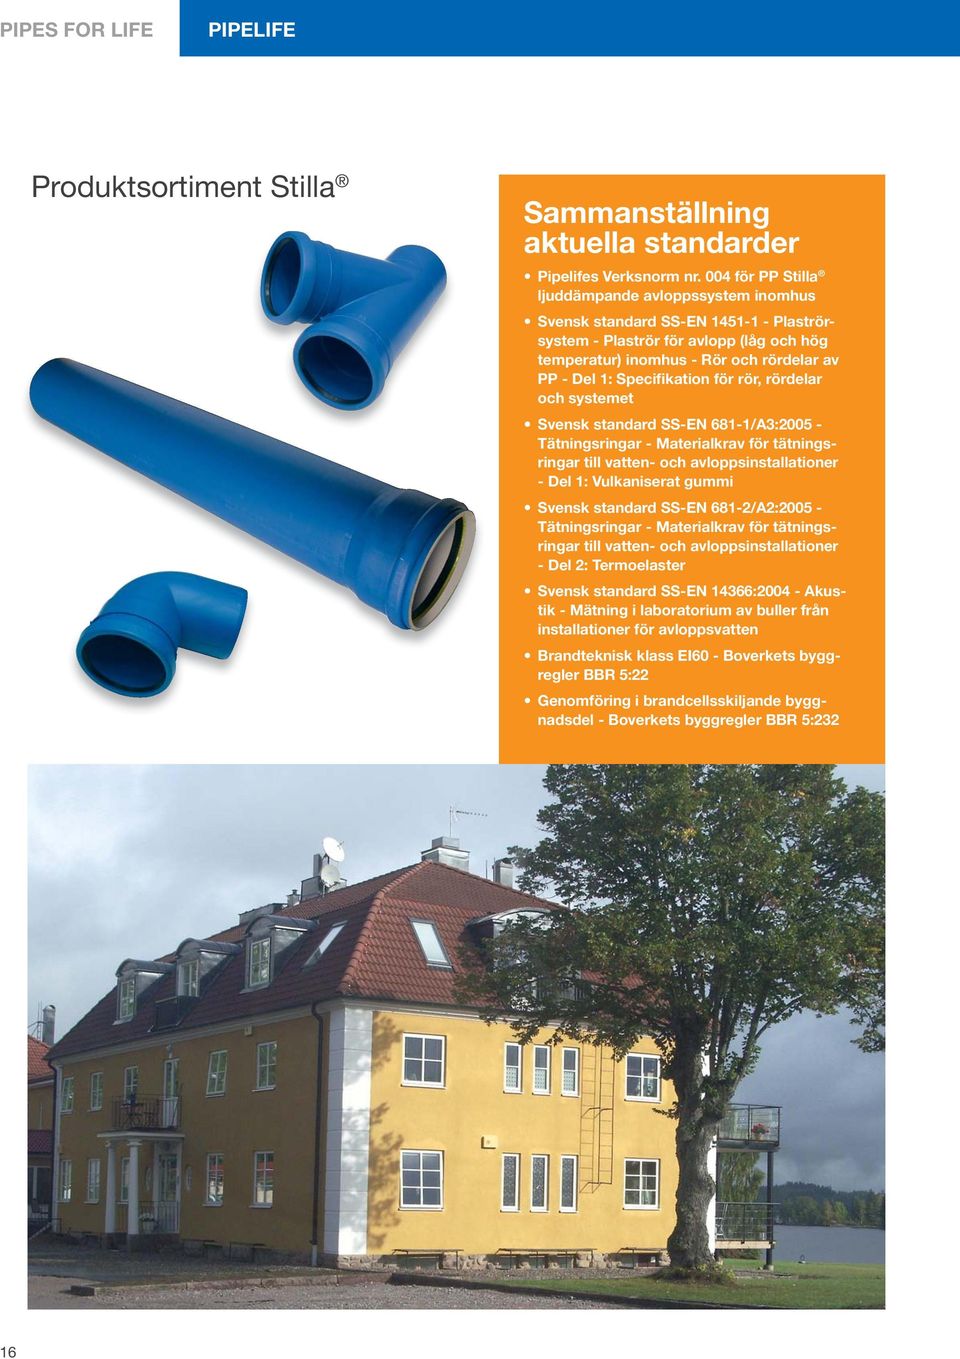 Specifikation för rör, rördelar och systemet Svensk standard SS-EN 681-1/A3:2005 - Tätningsringar - Materialkrav för tätningsringar till vatten- och avloppsinstallationer - Del 1: Vulkaniserat gummi